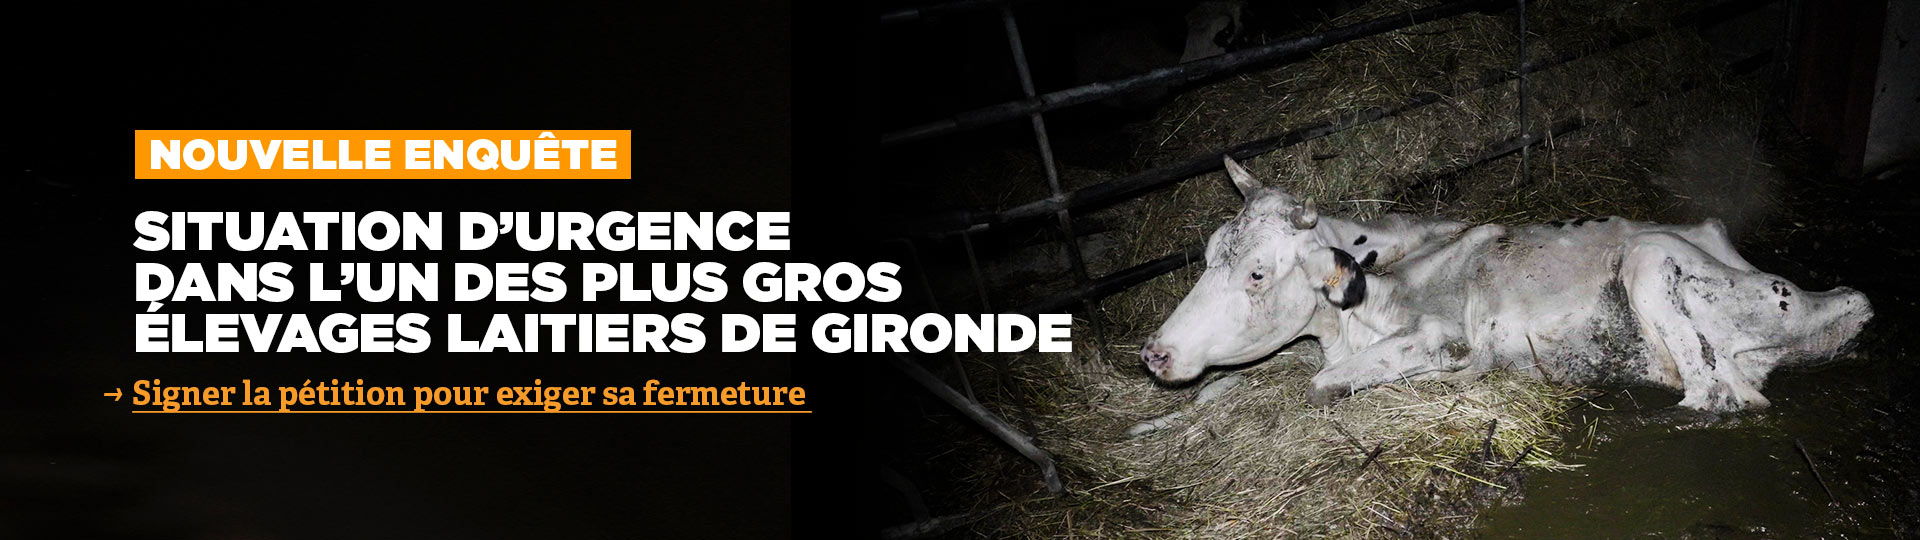 Urgence dans l'un des plus gros élevages de vaches laitières de Gironde